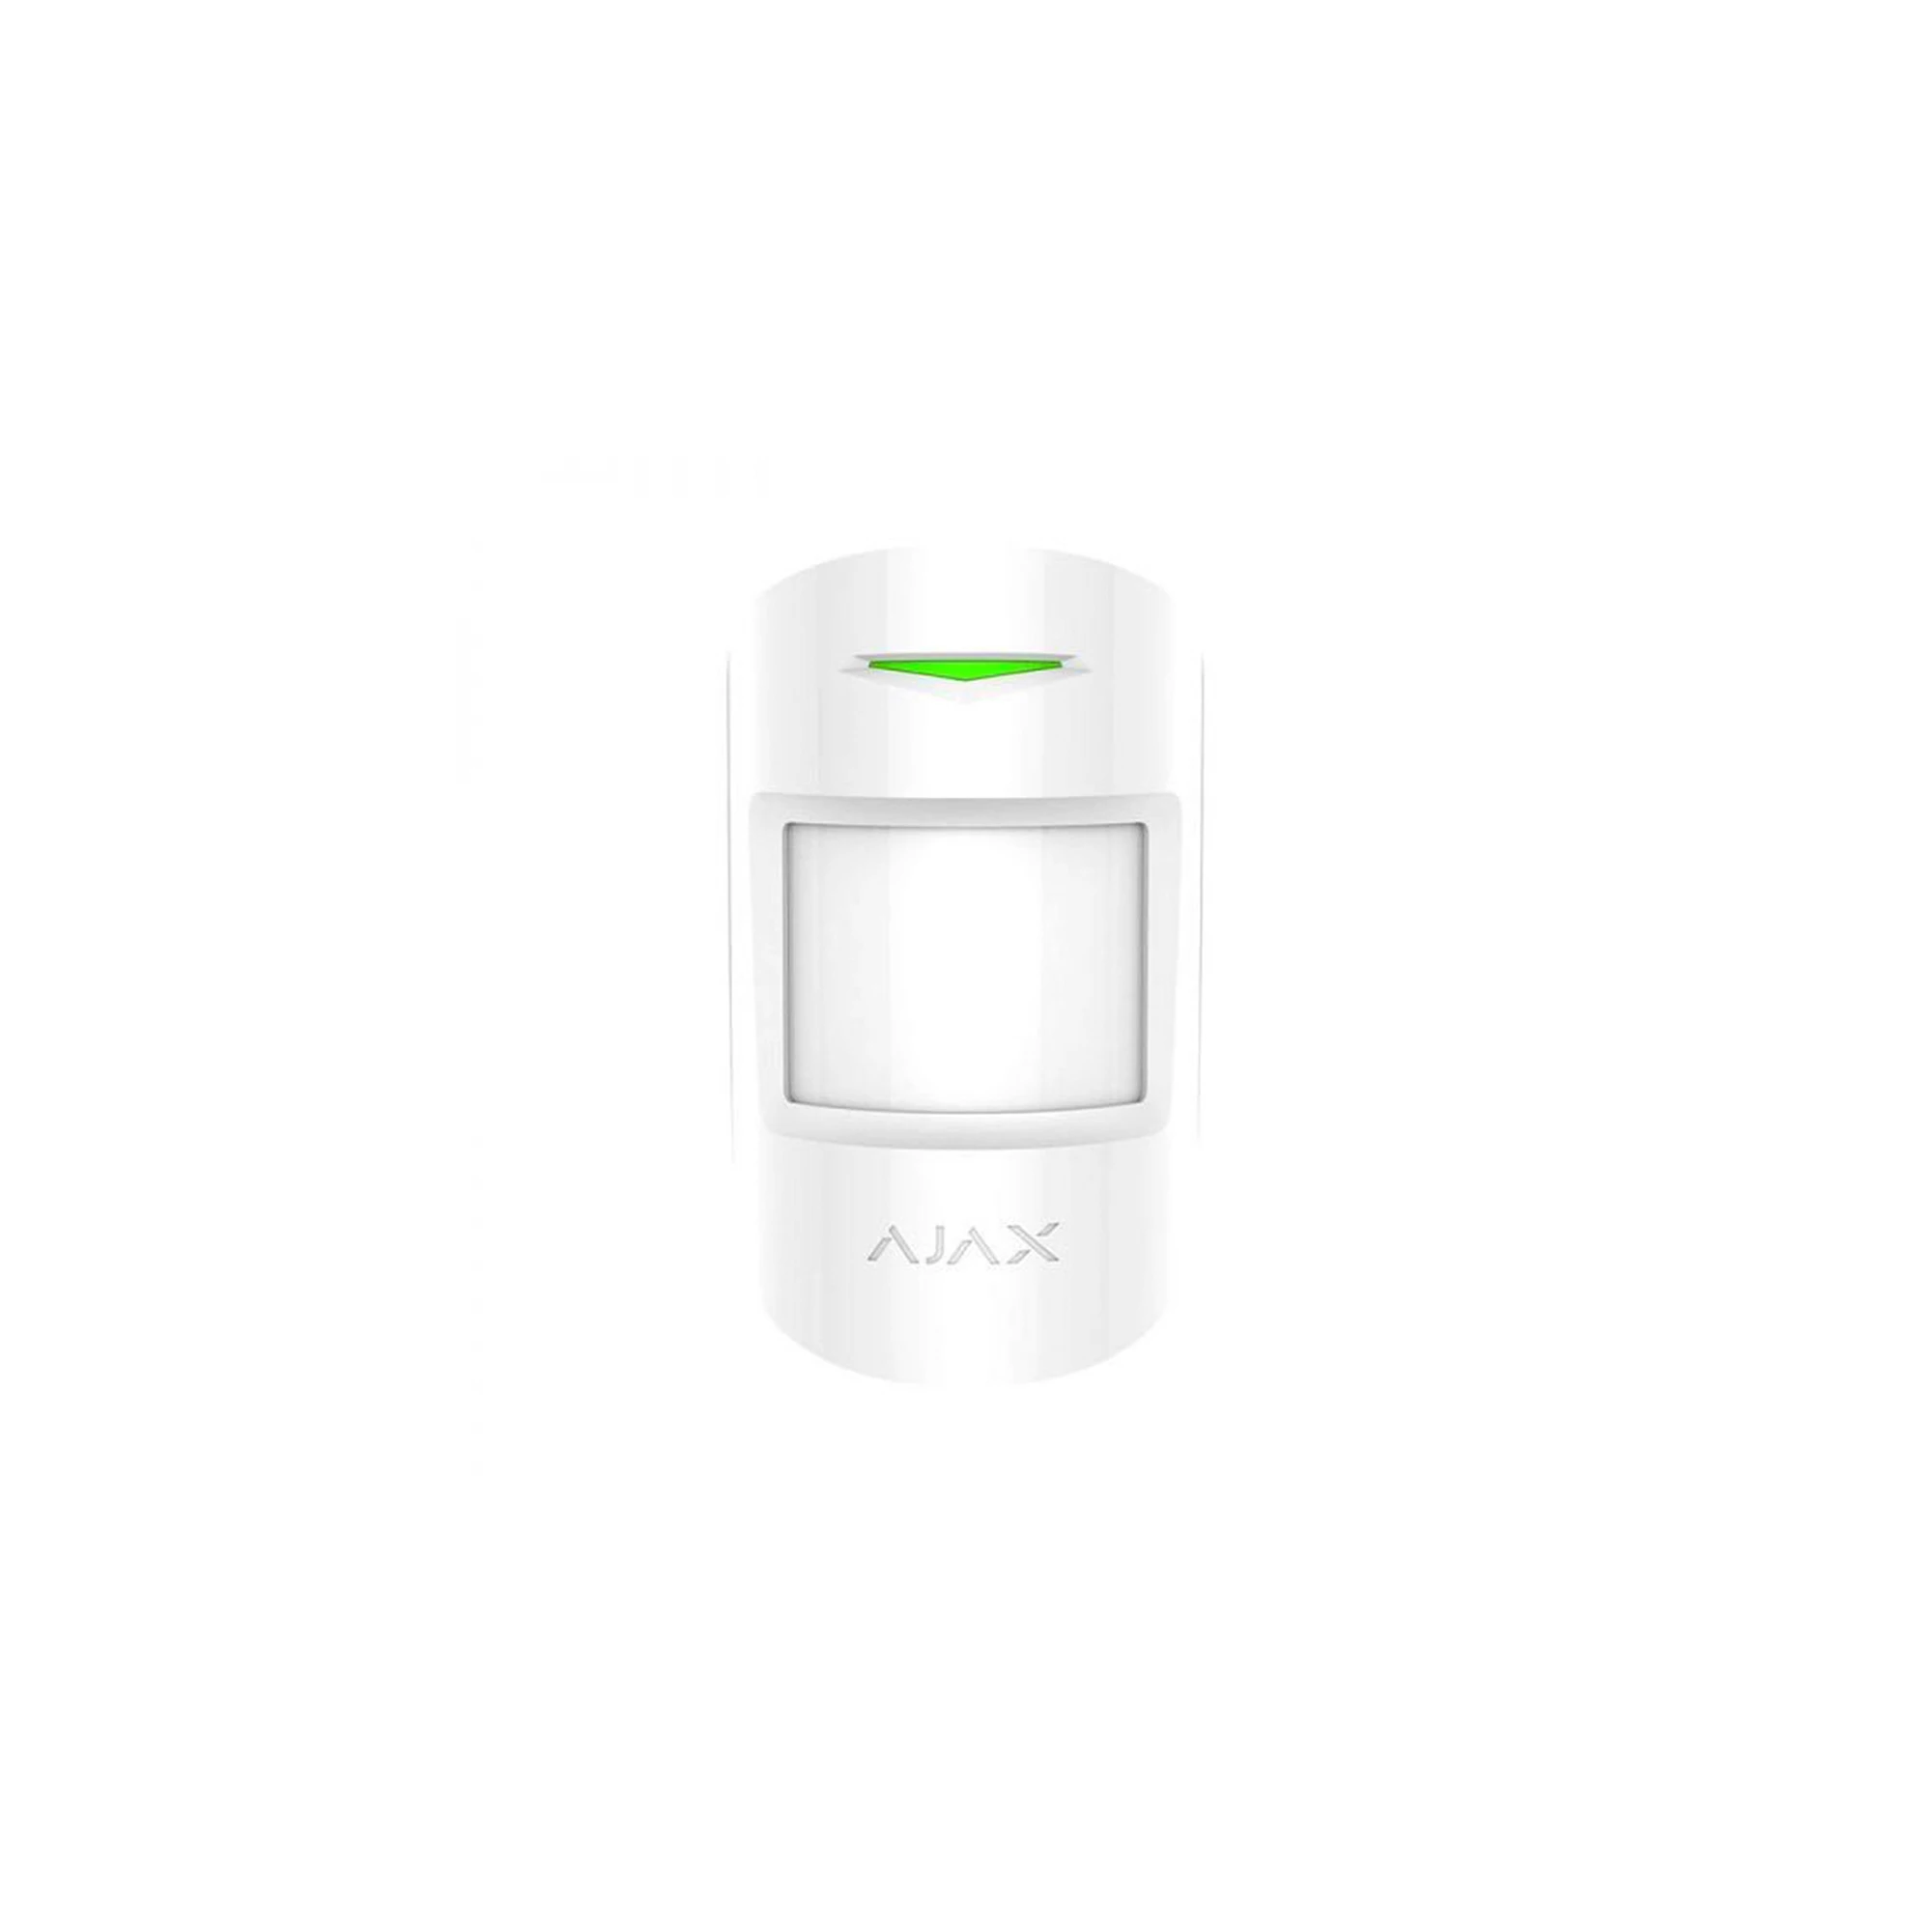 Ajax MotionProtect Plus White - беспроводной датчик движения с микроволновым сенсором